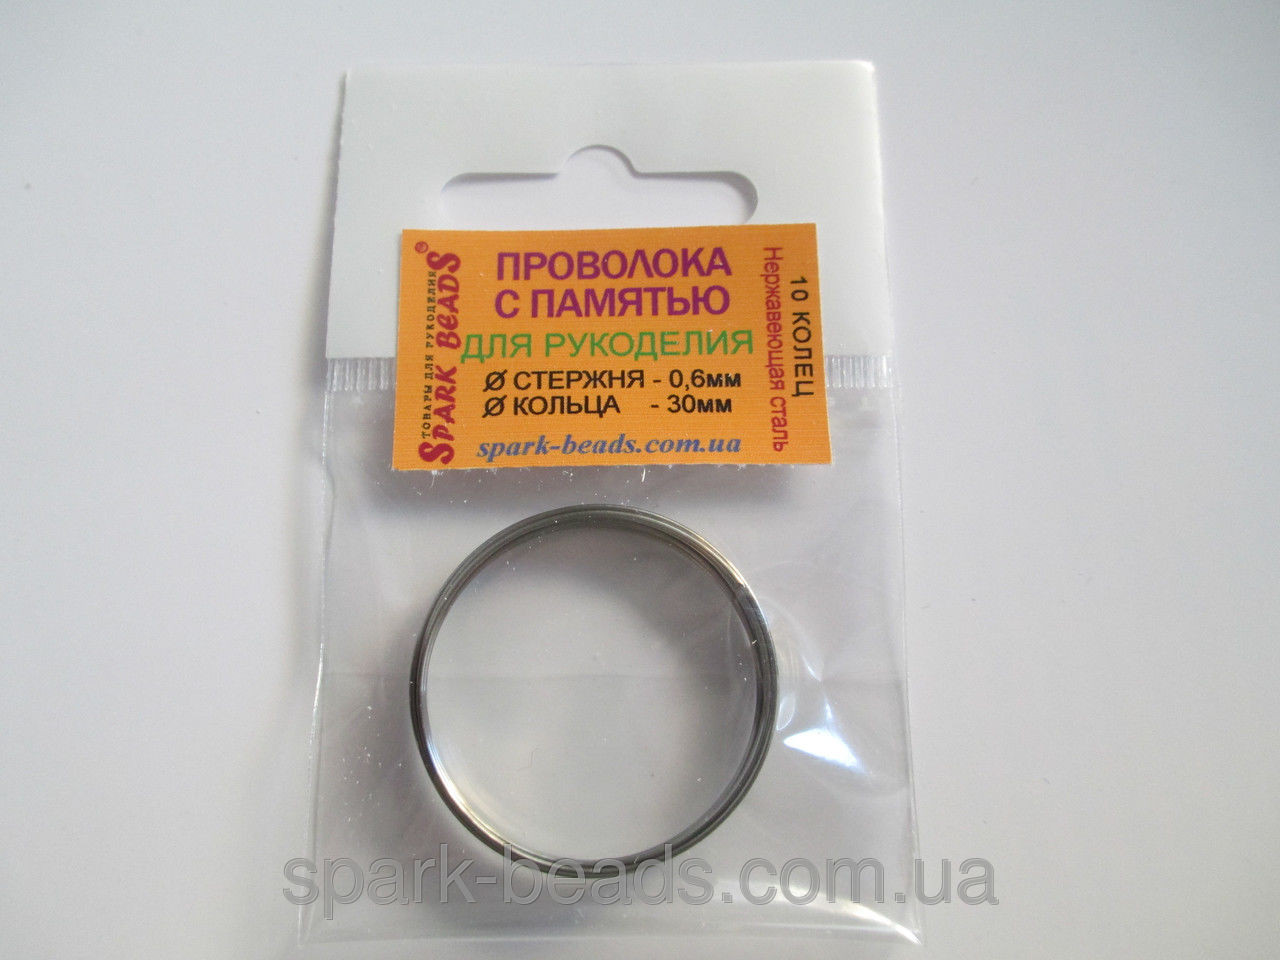 Проволока с памятью цвет серебро, диаметр кольца 30 мм, диаметр стержня проволоки 0,6 мм